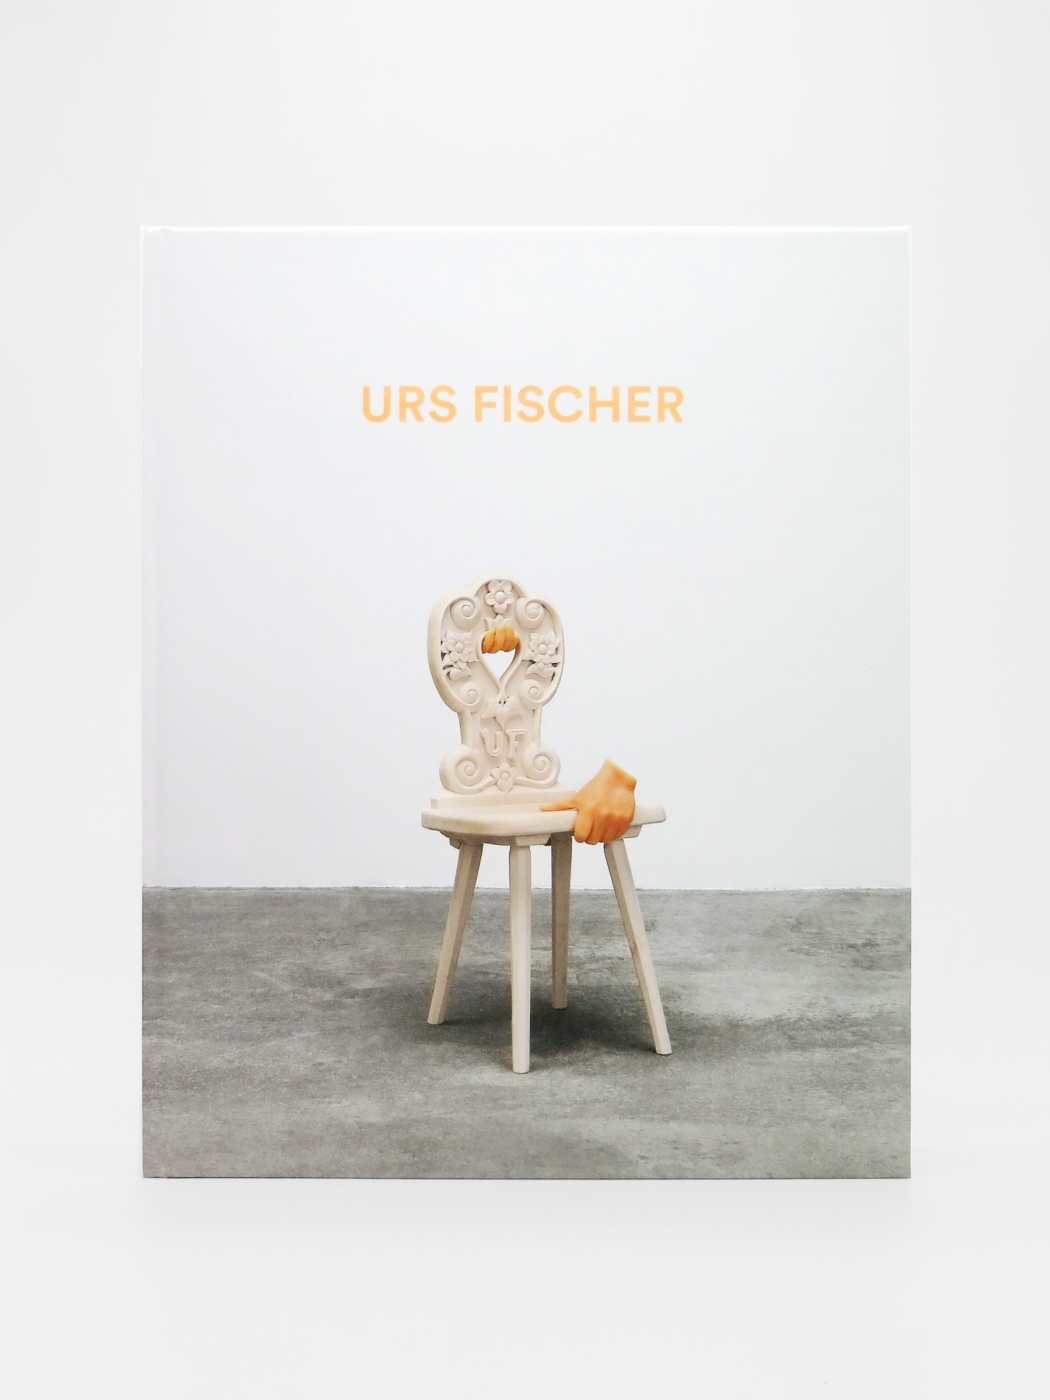 Urs Fischer, Sculptures 2013-2018